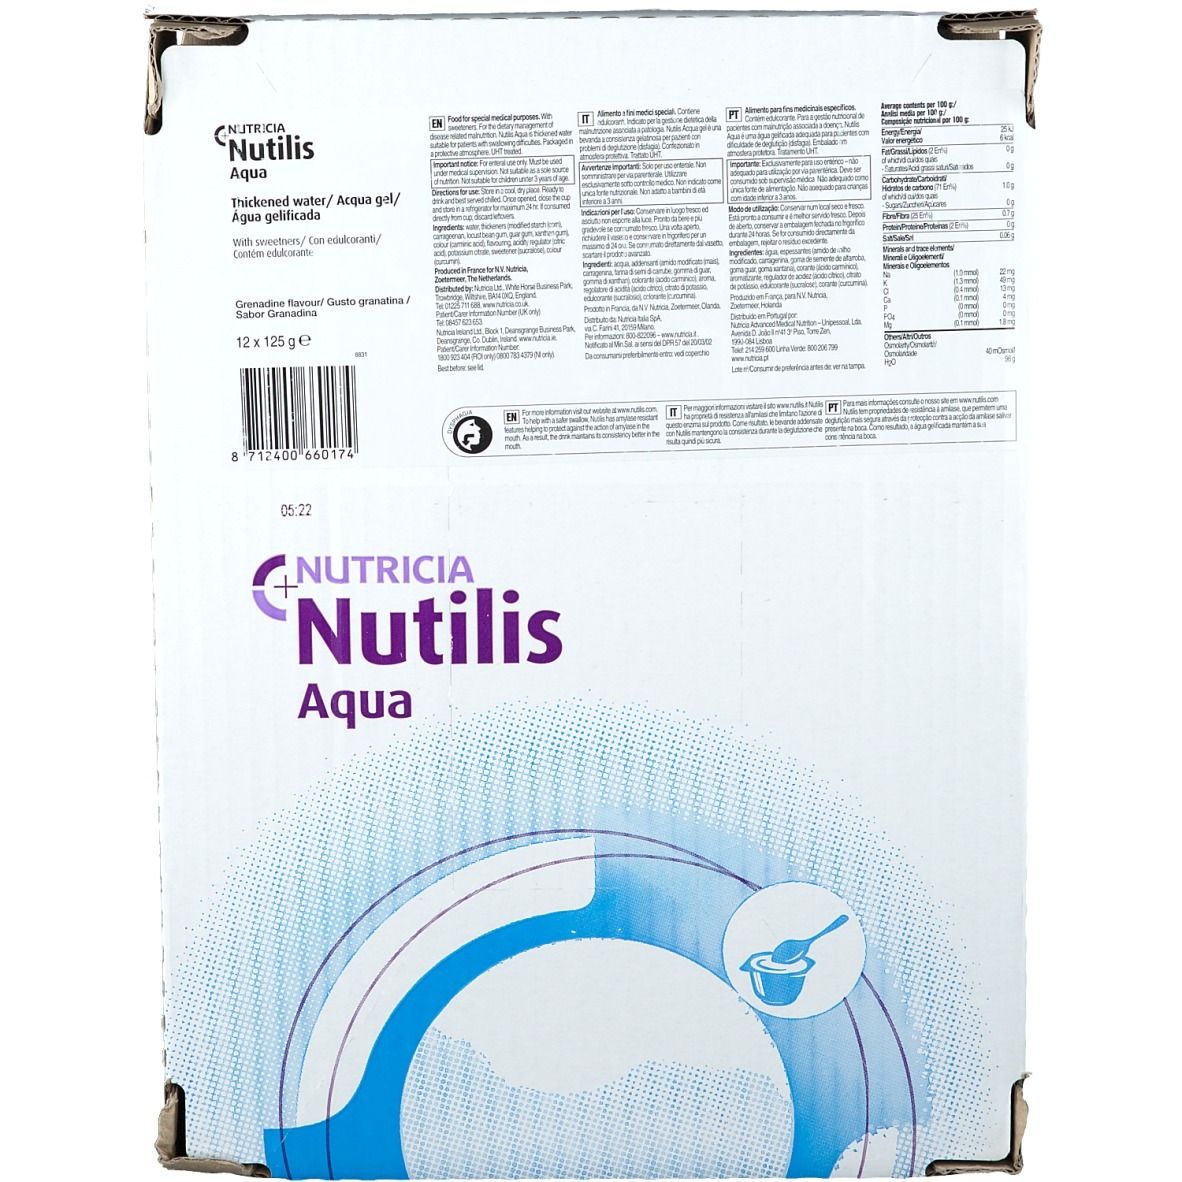 Nutricia Nutilis Aqua Gel Granatina